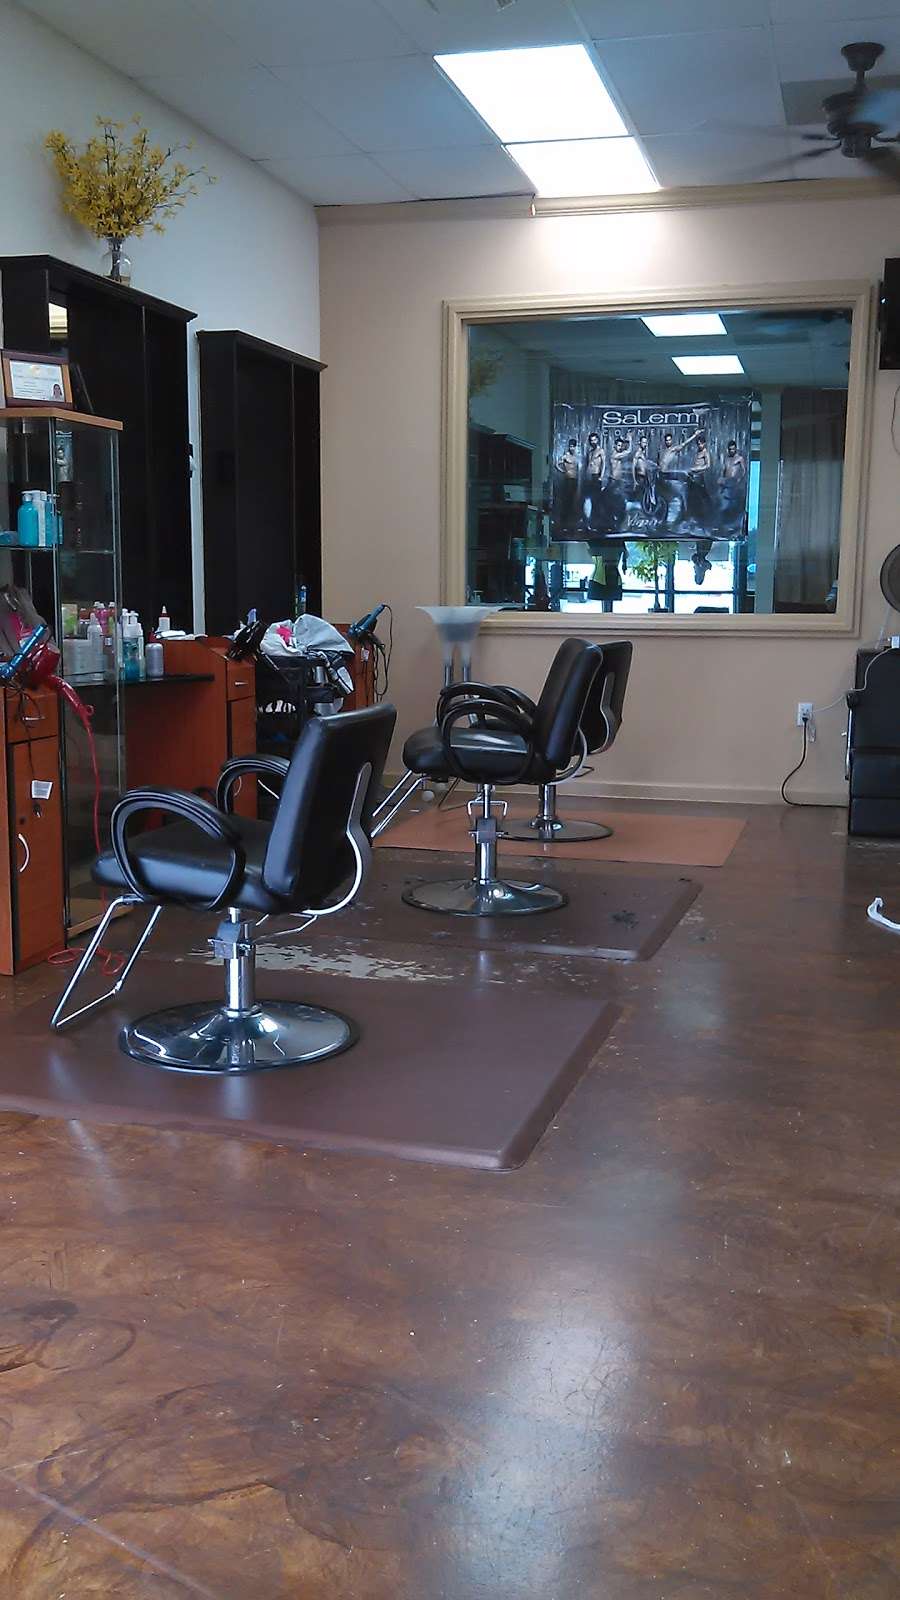 Emmas Spa & Hair Salon | 18775 Clay Rd, Houston, TX 77084, USA | Phone: (281) 579-3800